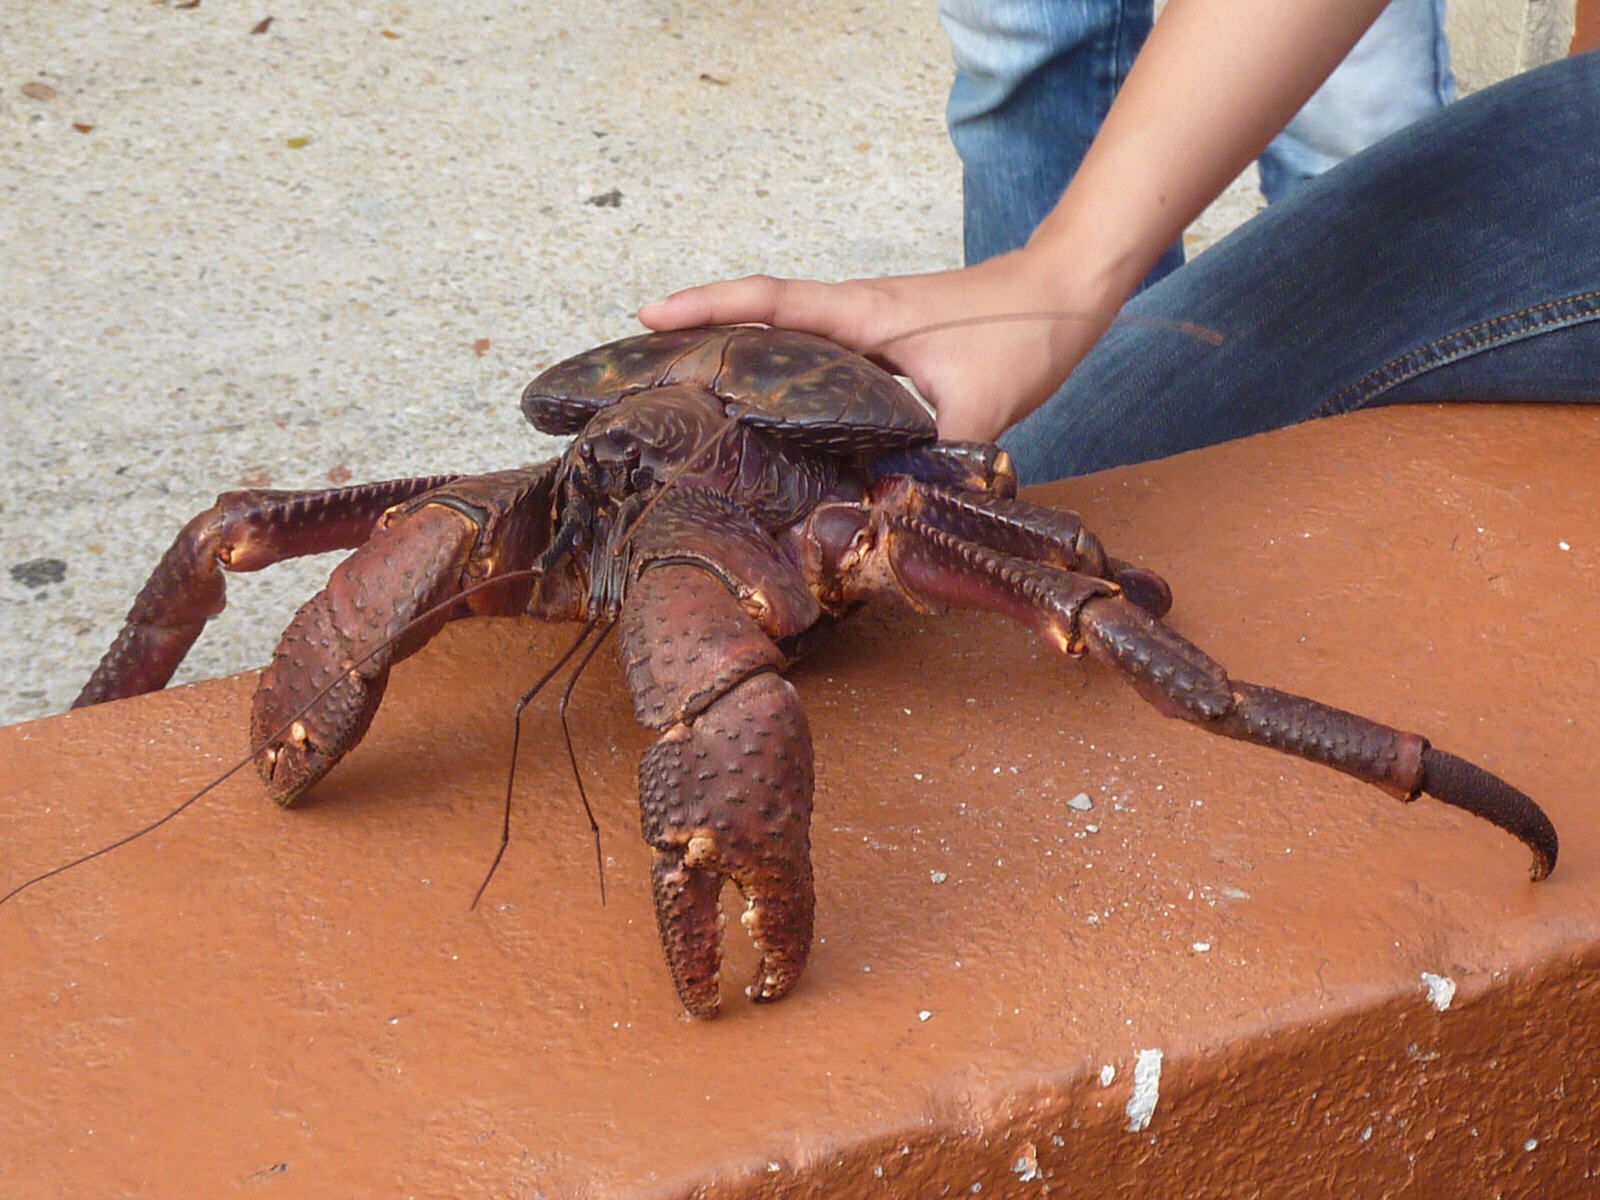 A Coconut crab at Chamorro Village in Guam